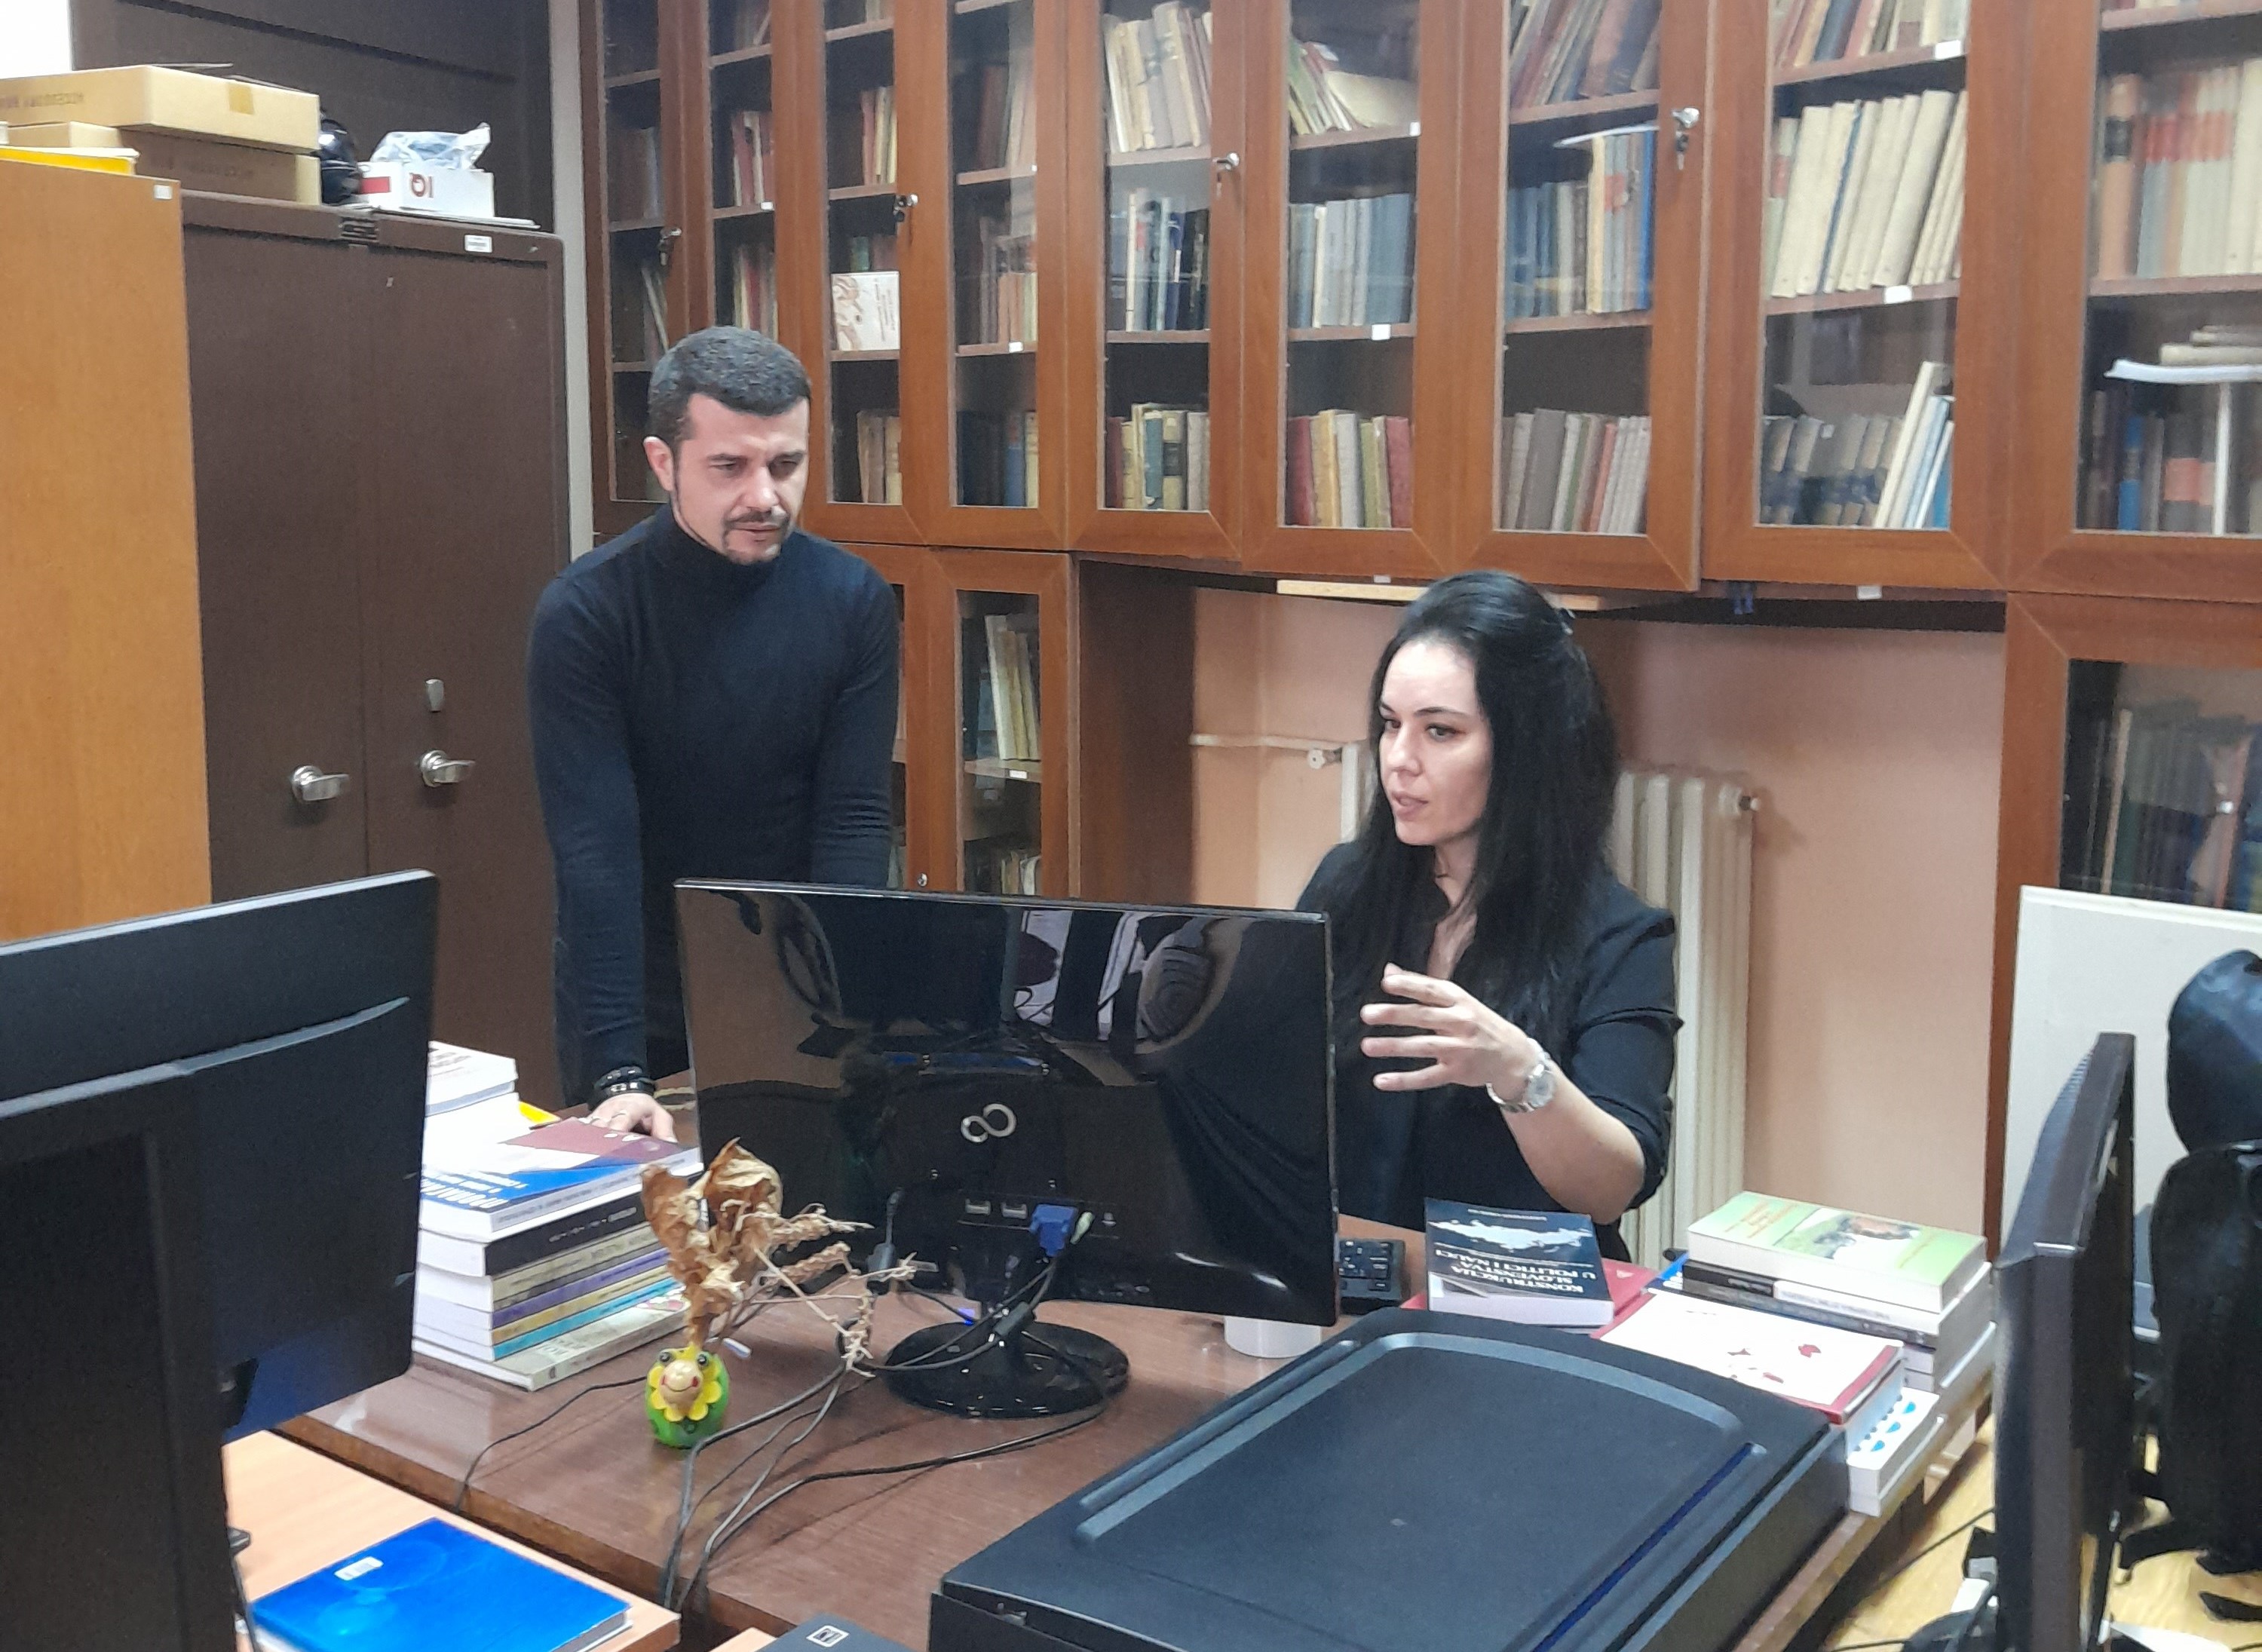 Одржан састанак сарадника ЕИ САНУ и Архива Војводине поводом наставка активности на пољу заједничке издавачке делатности